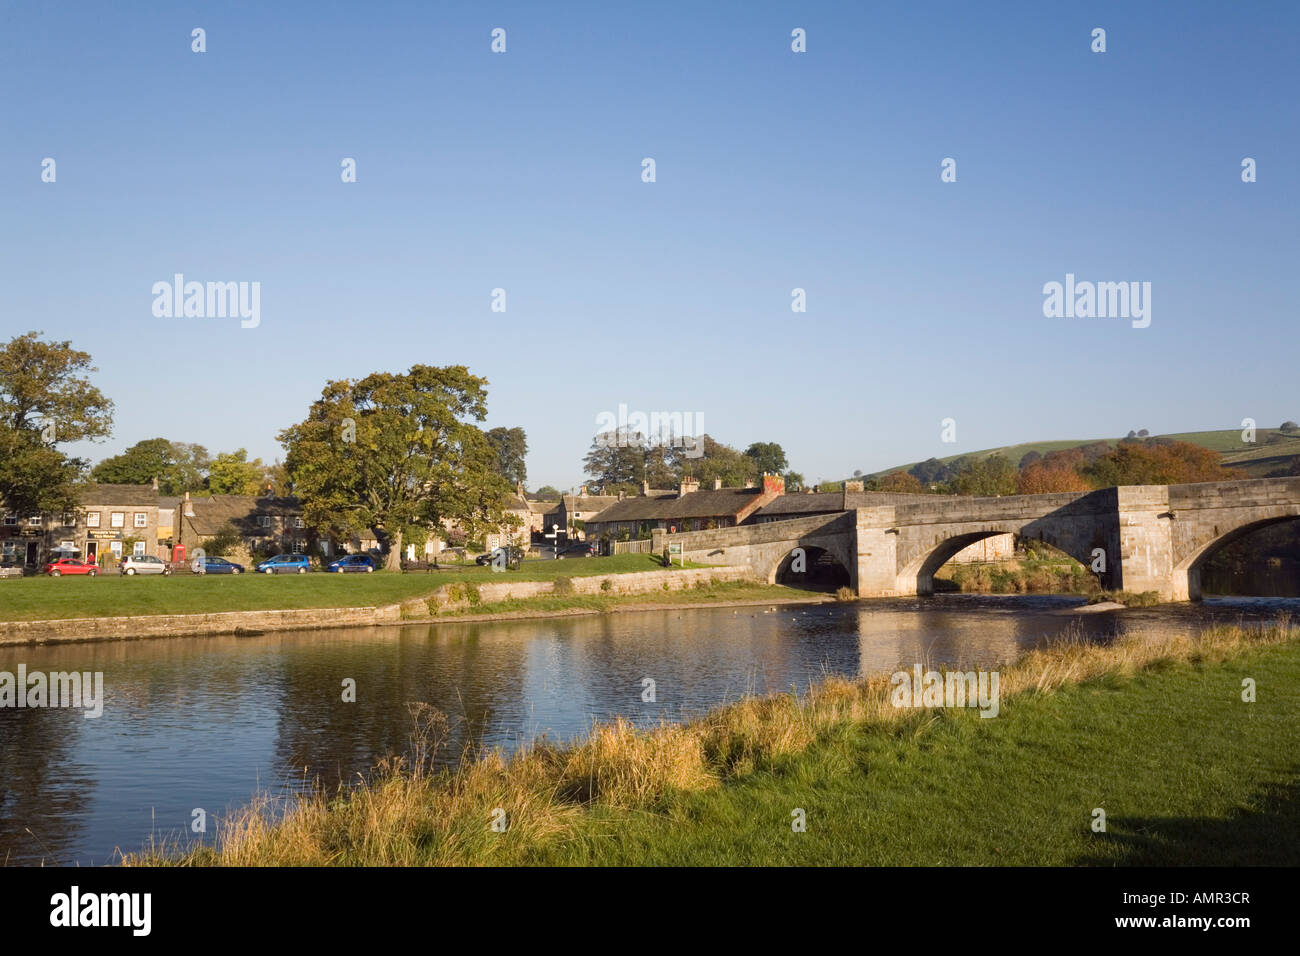 Fluß Wharfe und Stein gewölbten Brücke im malerischen Dorf in Yorkshire Dales National Park. Burnsall Wharfedale North Yorkshire England UK Stockfoto